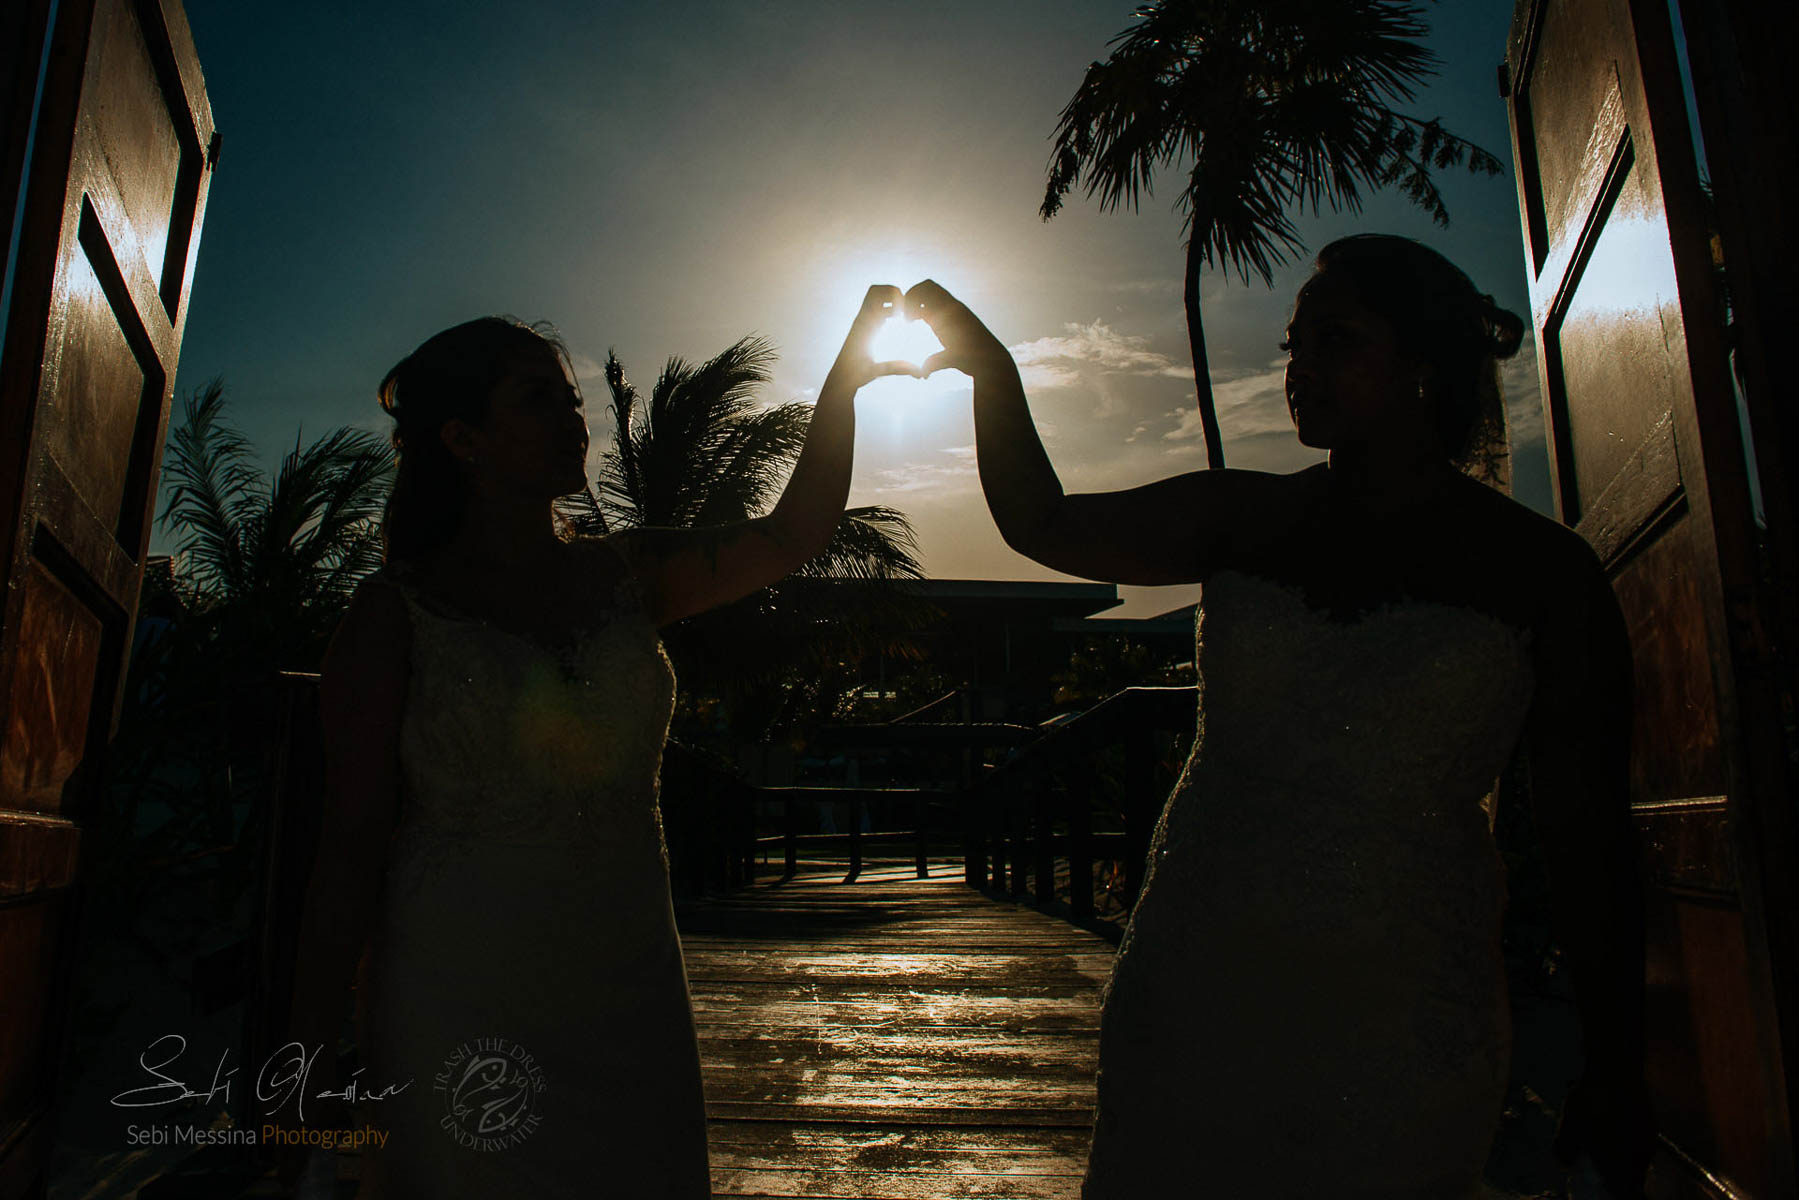 Two brides - Royalton Cancun - Same-sex wedding Mexico - Sebi Messina Photography